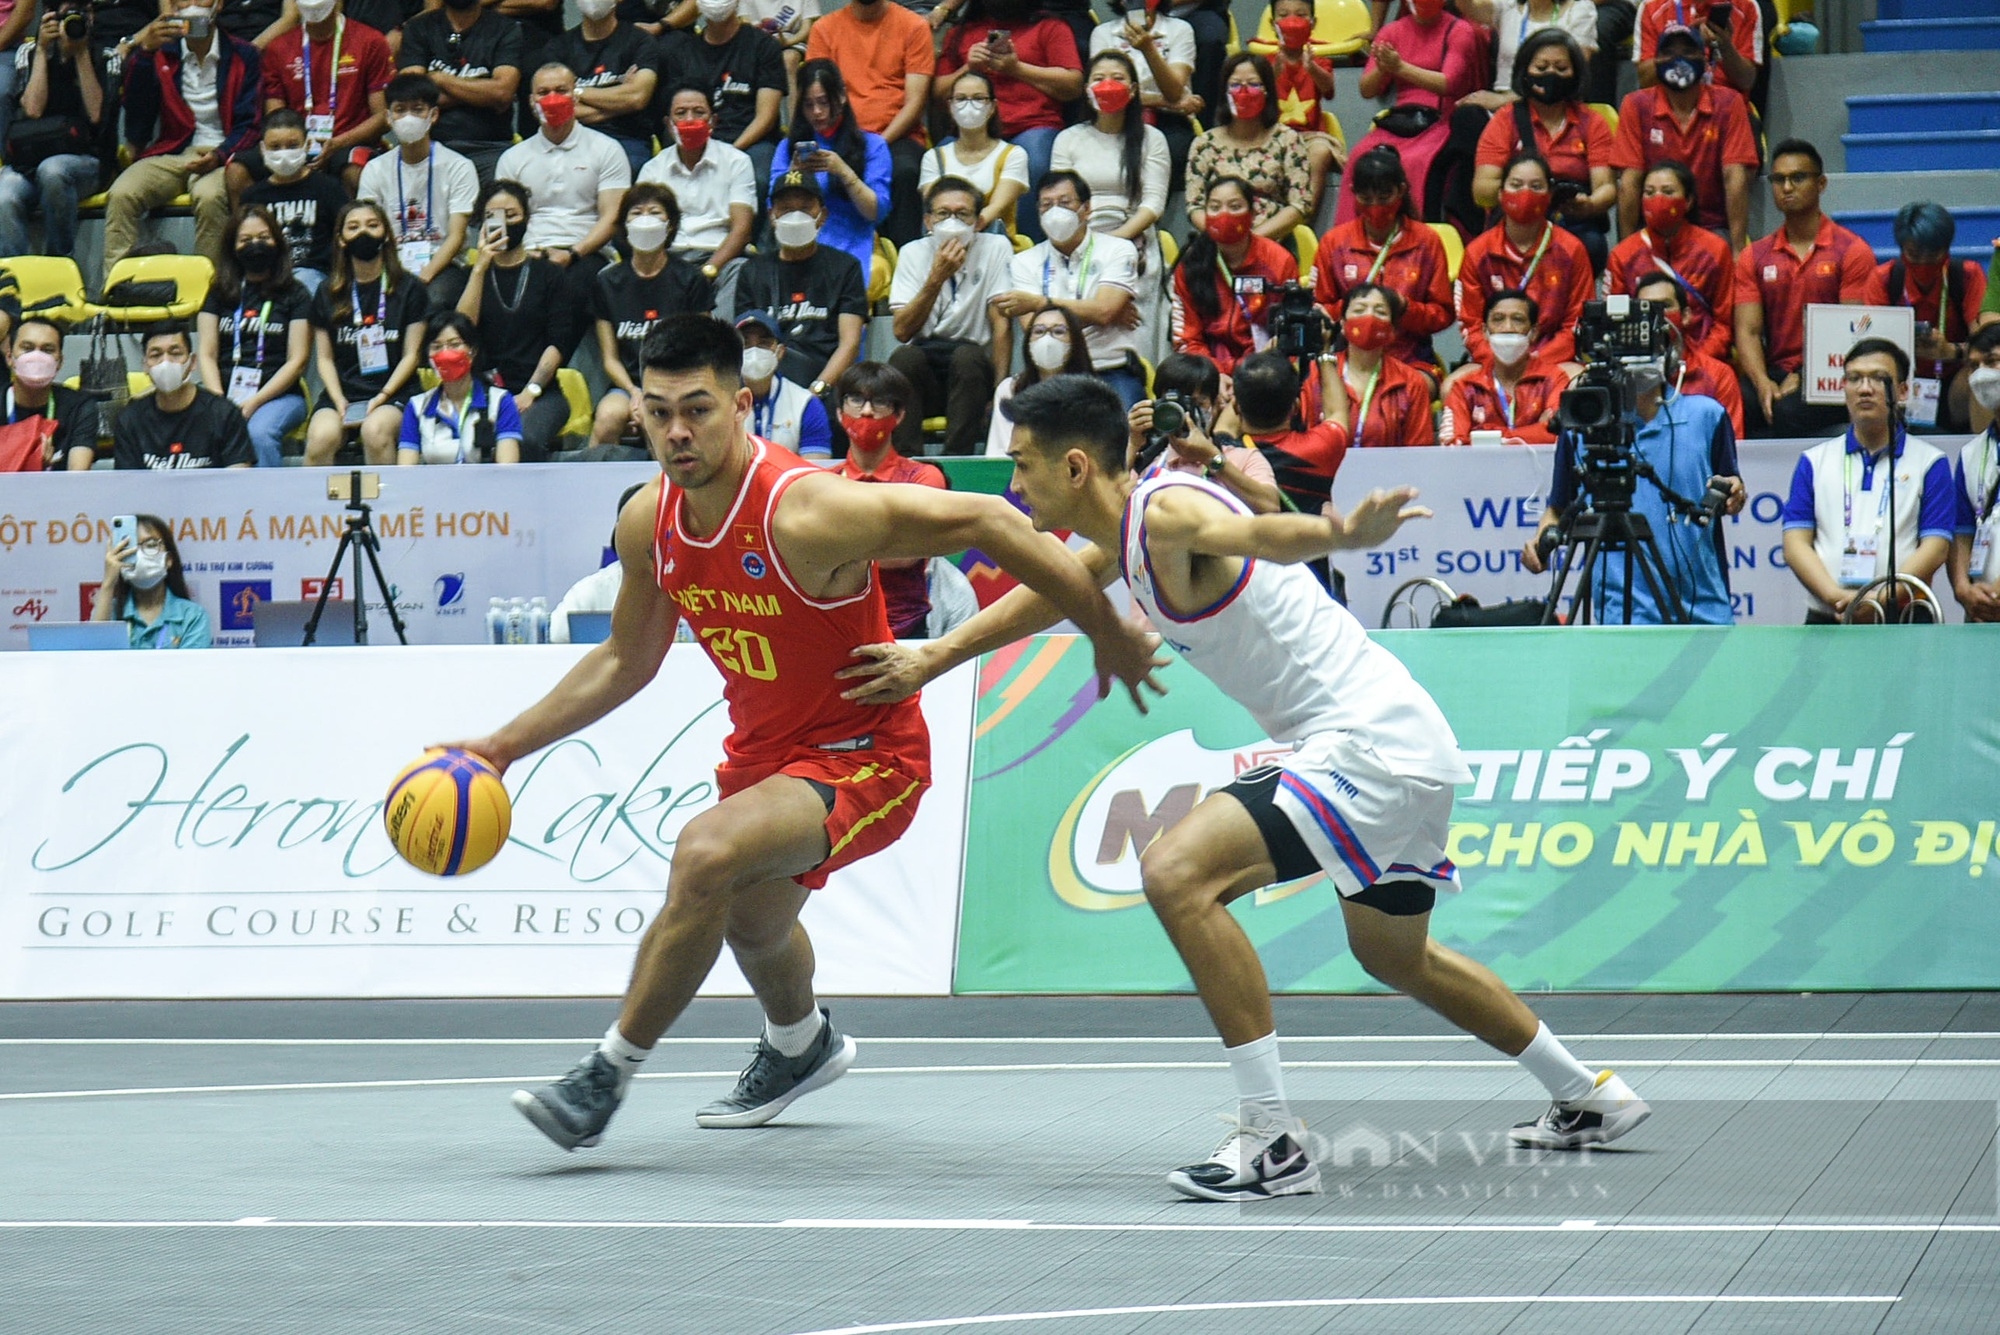 Đội tuyển nam Việt Nam giành chiến thắng trong trận đầu khởi tranh môn bóng rổ - Ảnh 4.